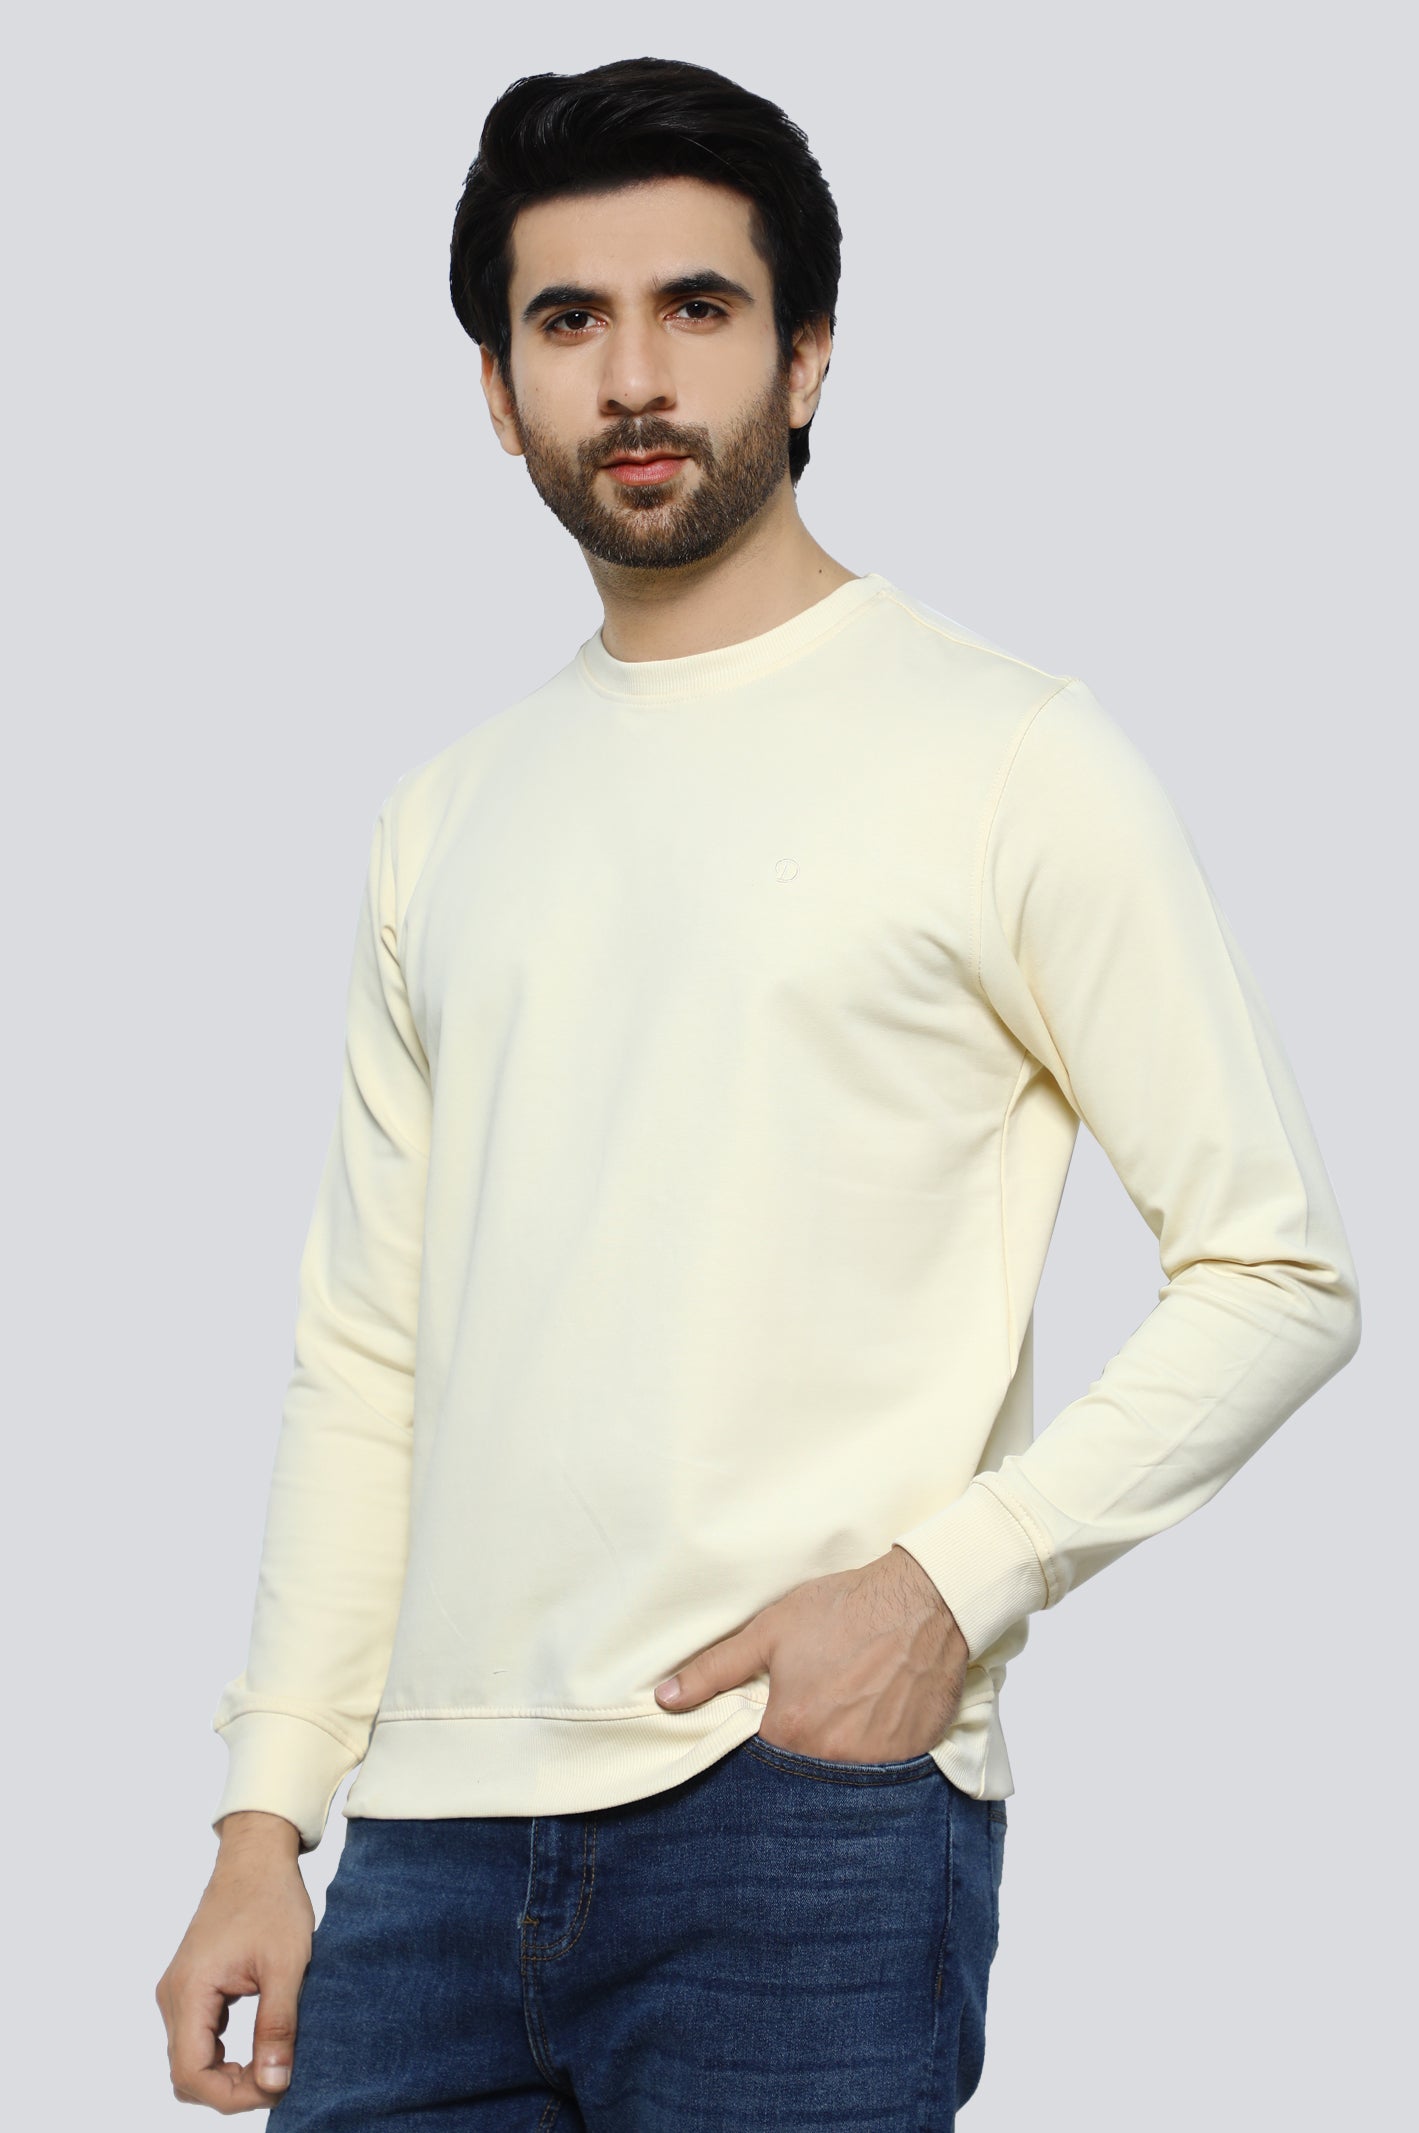 Sweatshirt for Men's – Diners Pakistan